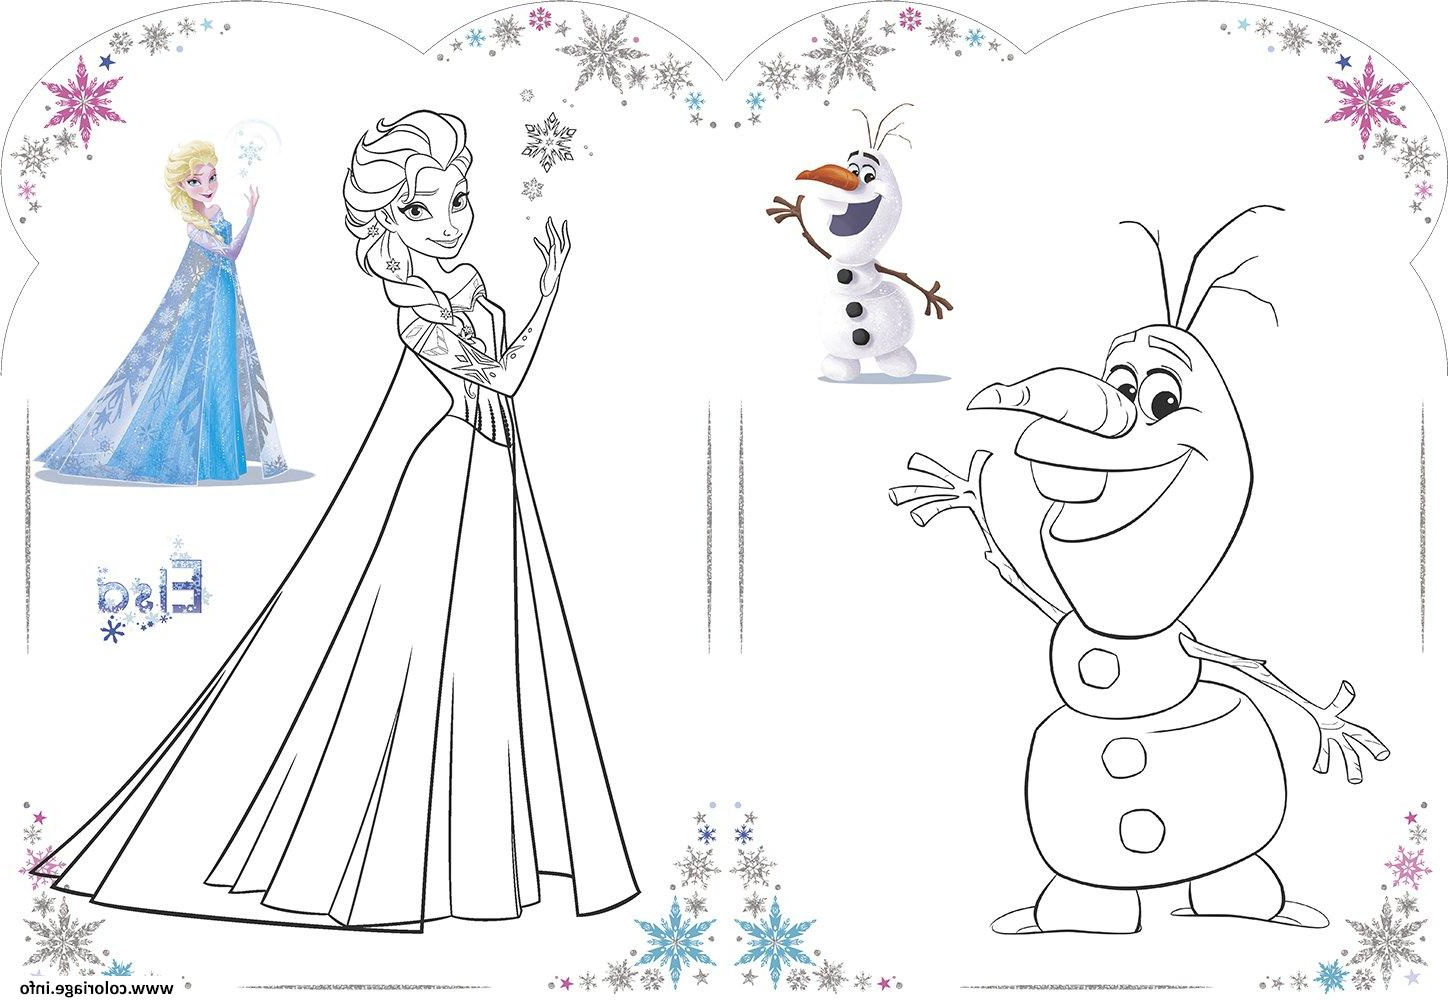 Coloriage Reine Des Neiges Elsa Beau Galerie Coloriage Olaf Et Elsa Reine Des Neiges Disney 2018 Dessin